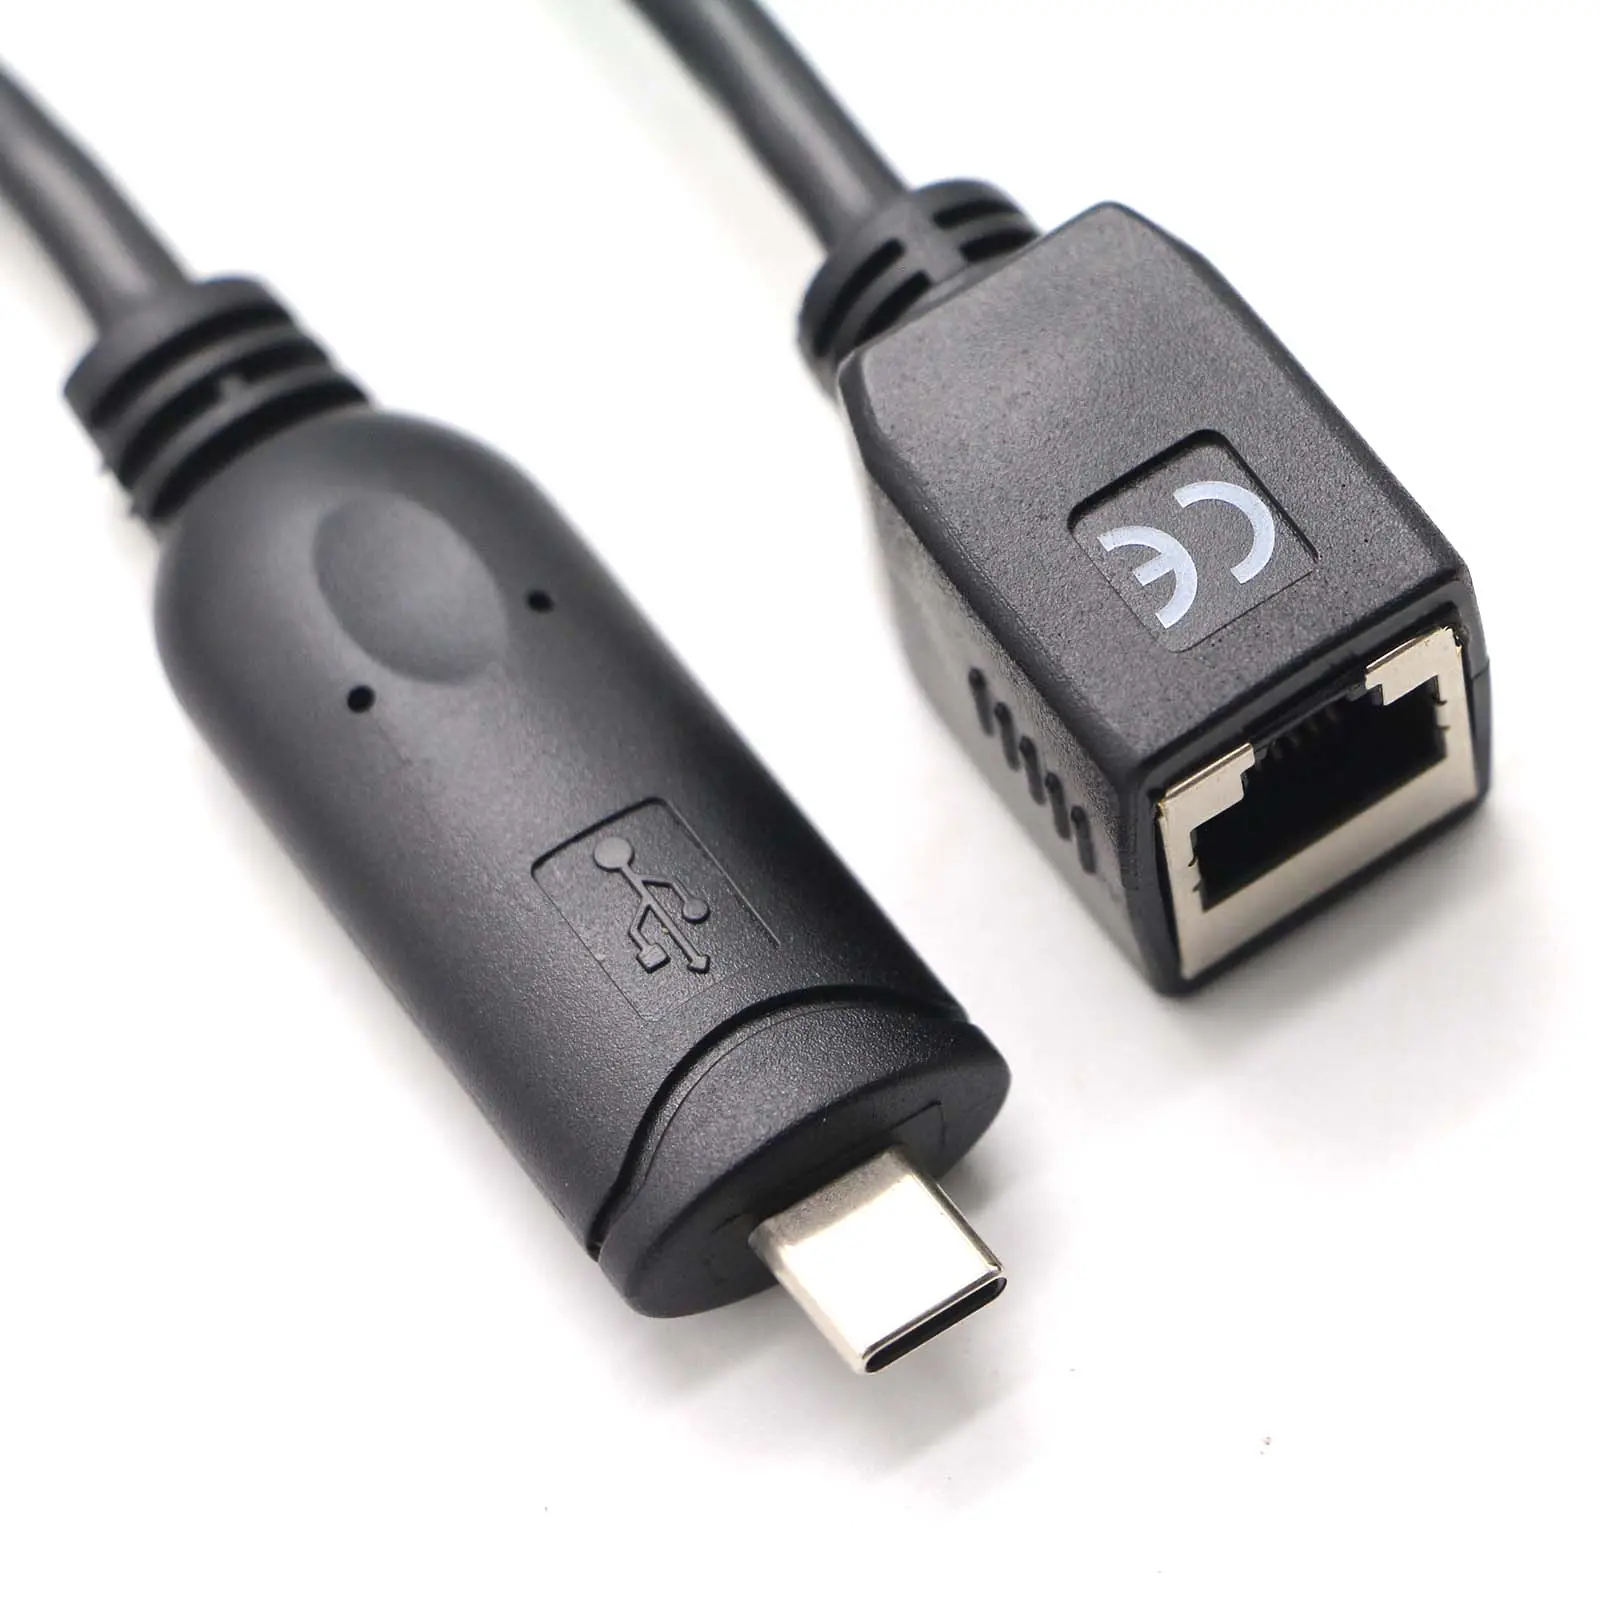 USB 2.0 A erkek tipi C erkek konsol adaptörü-usb RJ45 (RS-232) dönüştürücü kablosu (DB9 seri)